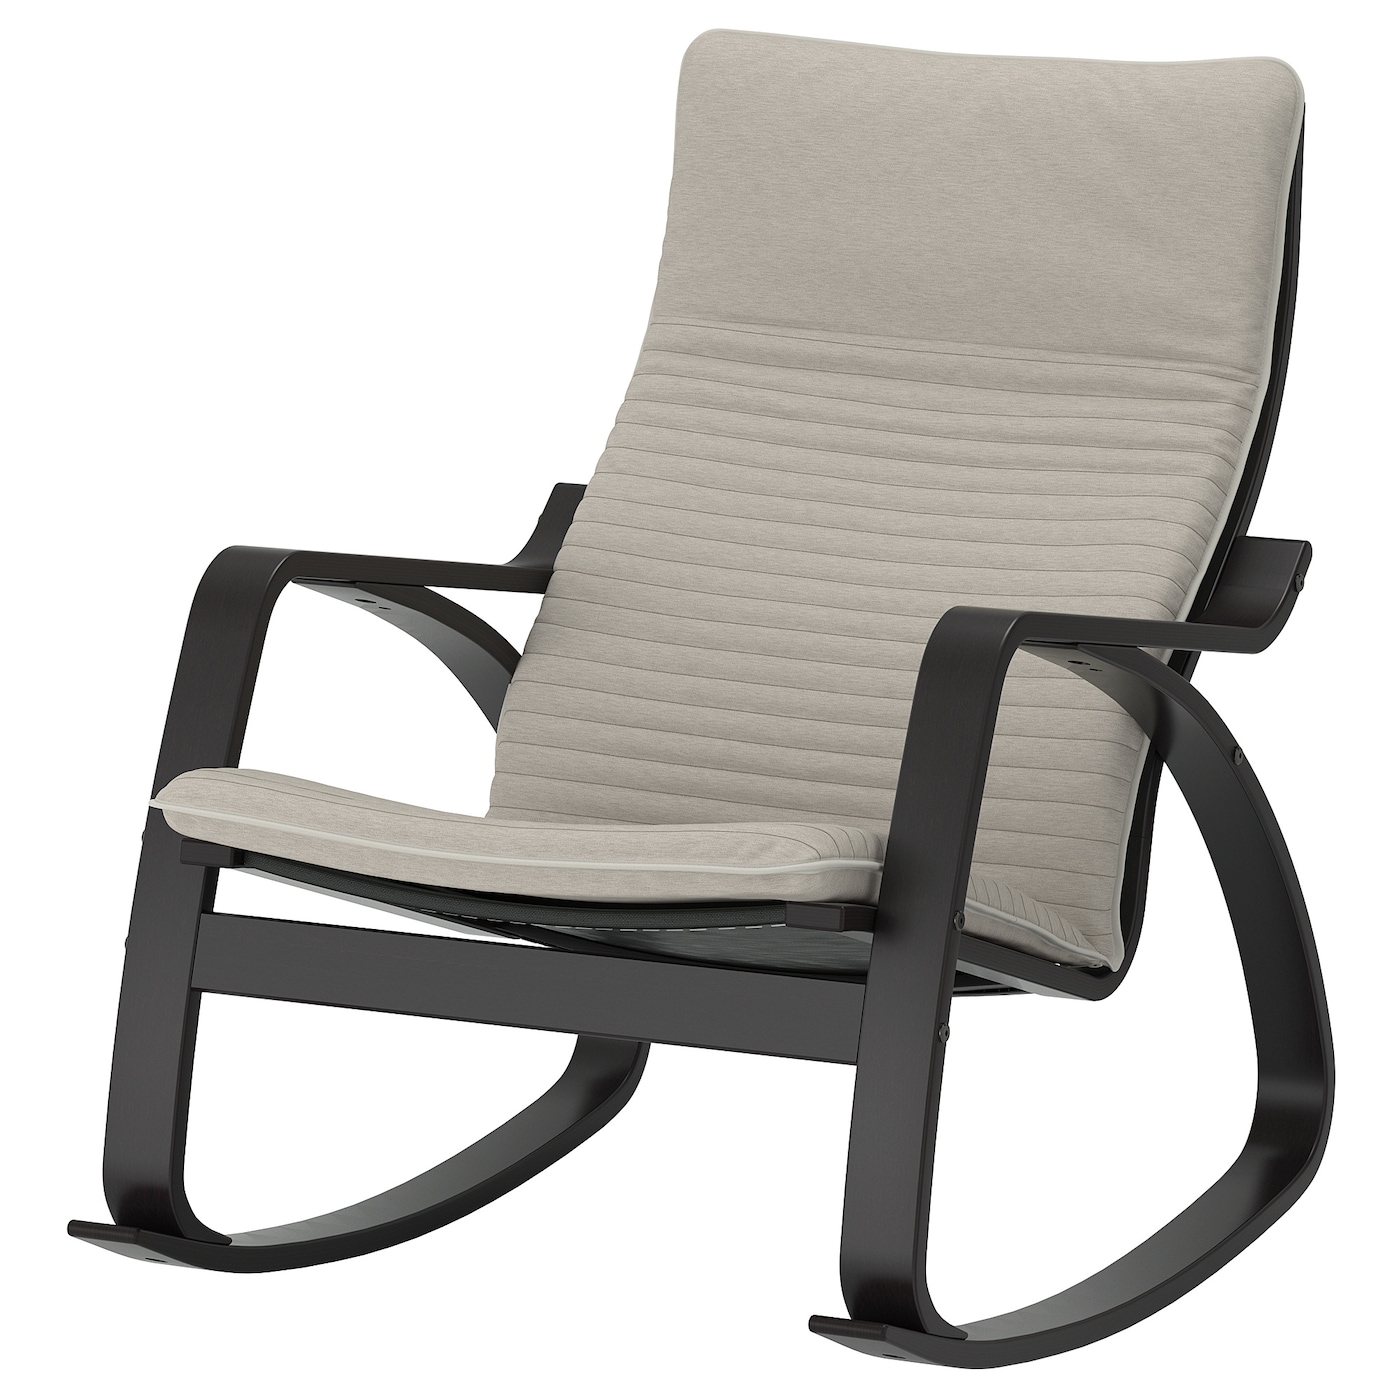 ПОЭНГ Кресло-качалка, черно-коричневый/Книса светло-бежевый POÄNG IKEA кресло tetchair сн757 ткань коричневый бежевый c 26 c 13